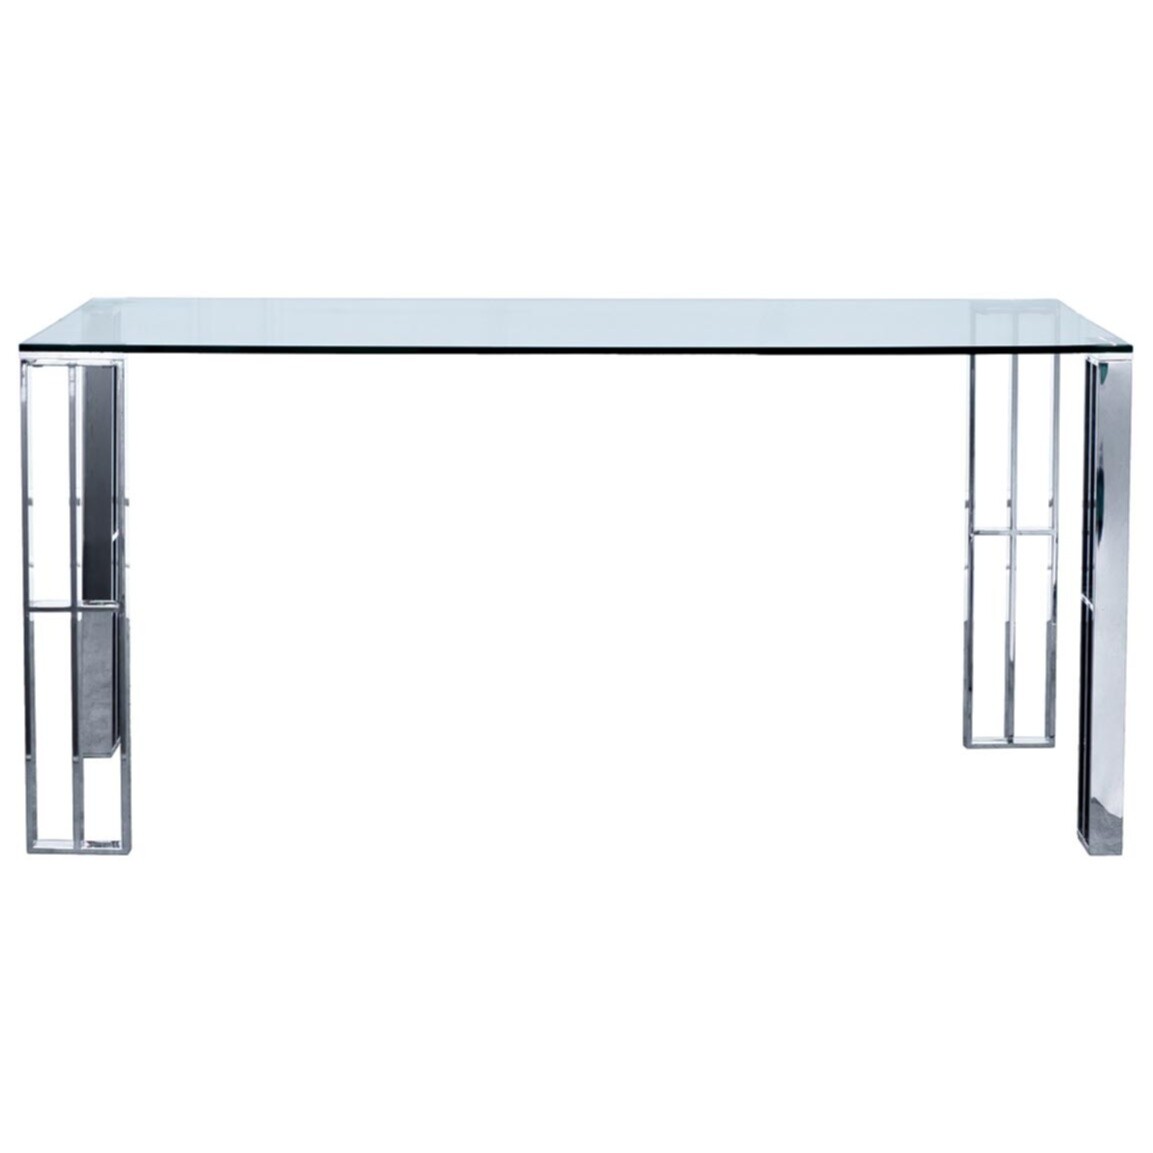 Обеденный стол стеклянный прямоугольный с ножками хром 160 см